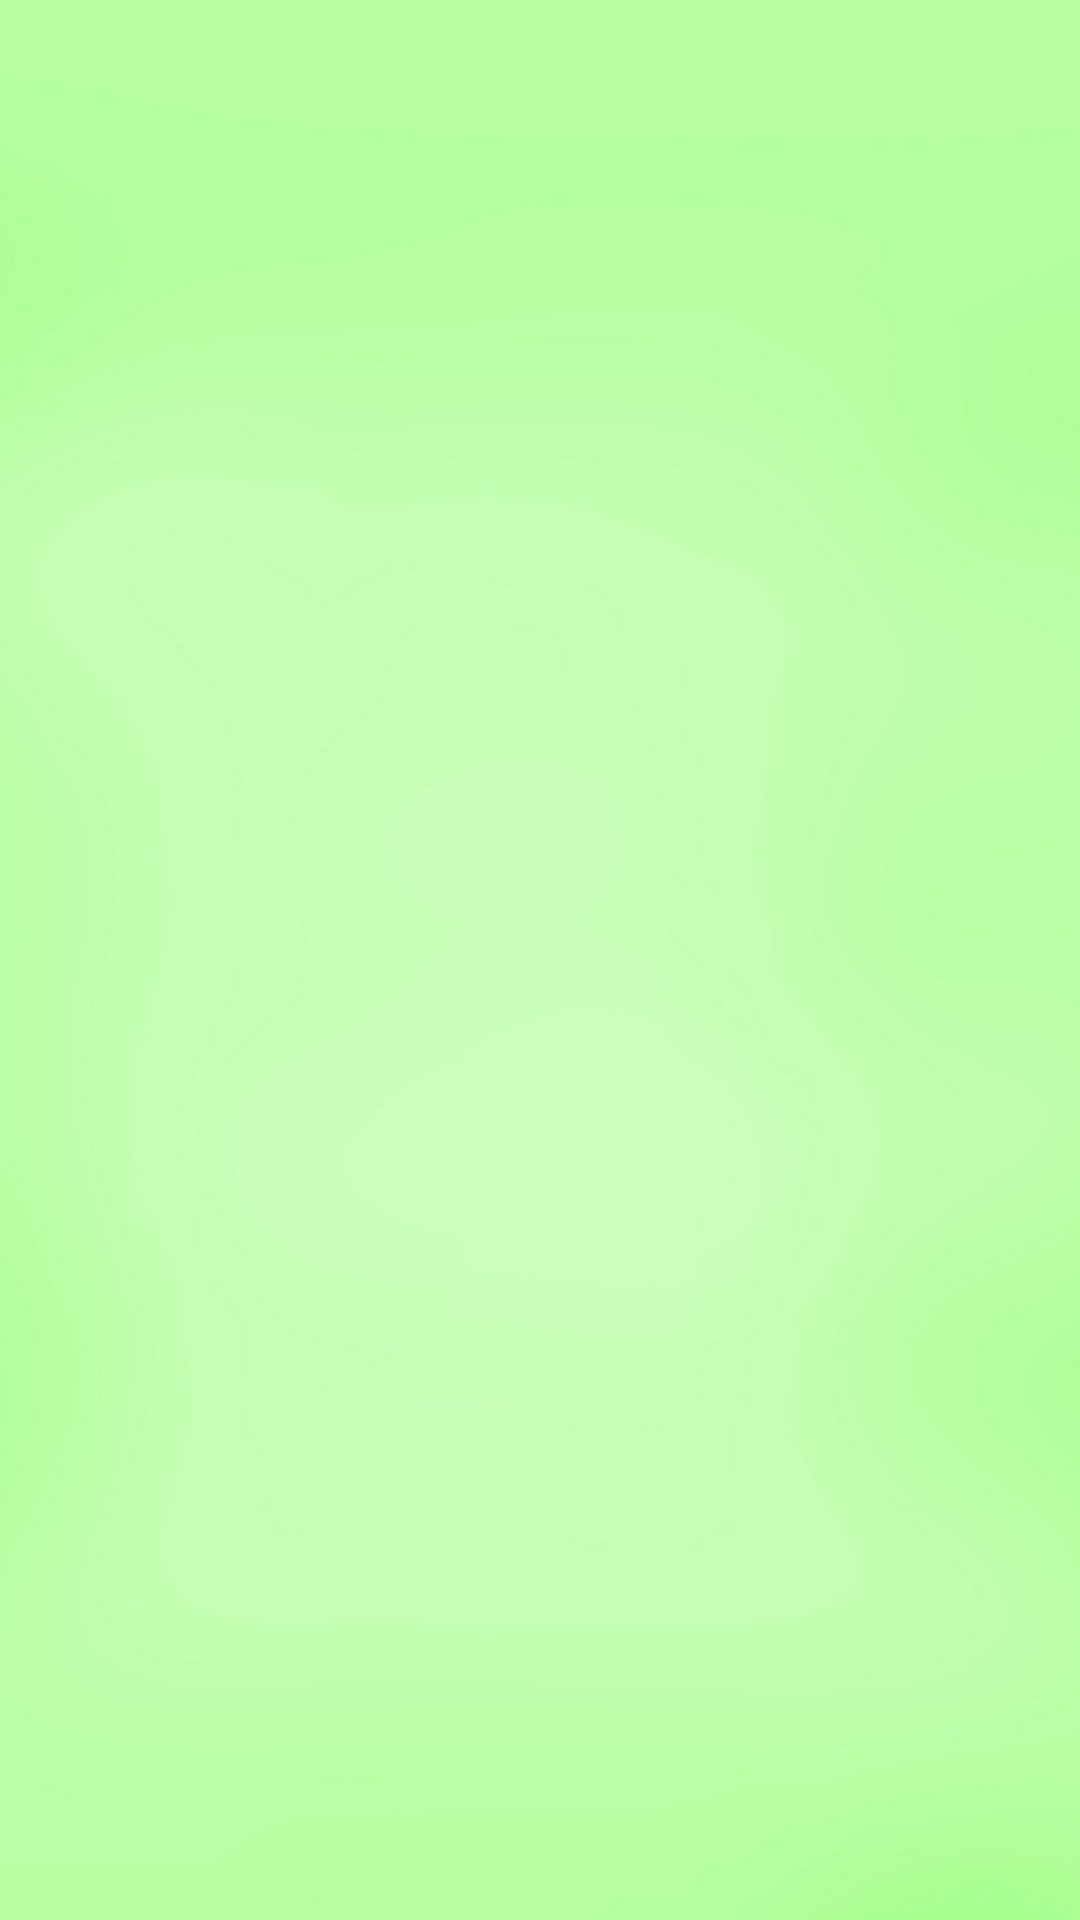 밝은 녹색 벽지,초록,노랑,아쿠아,터키 옥,잔디